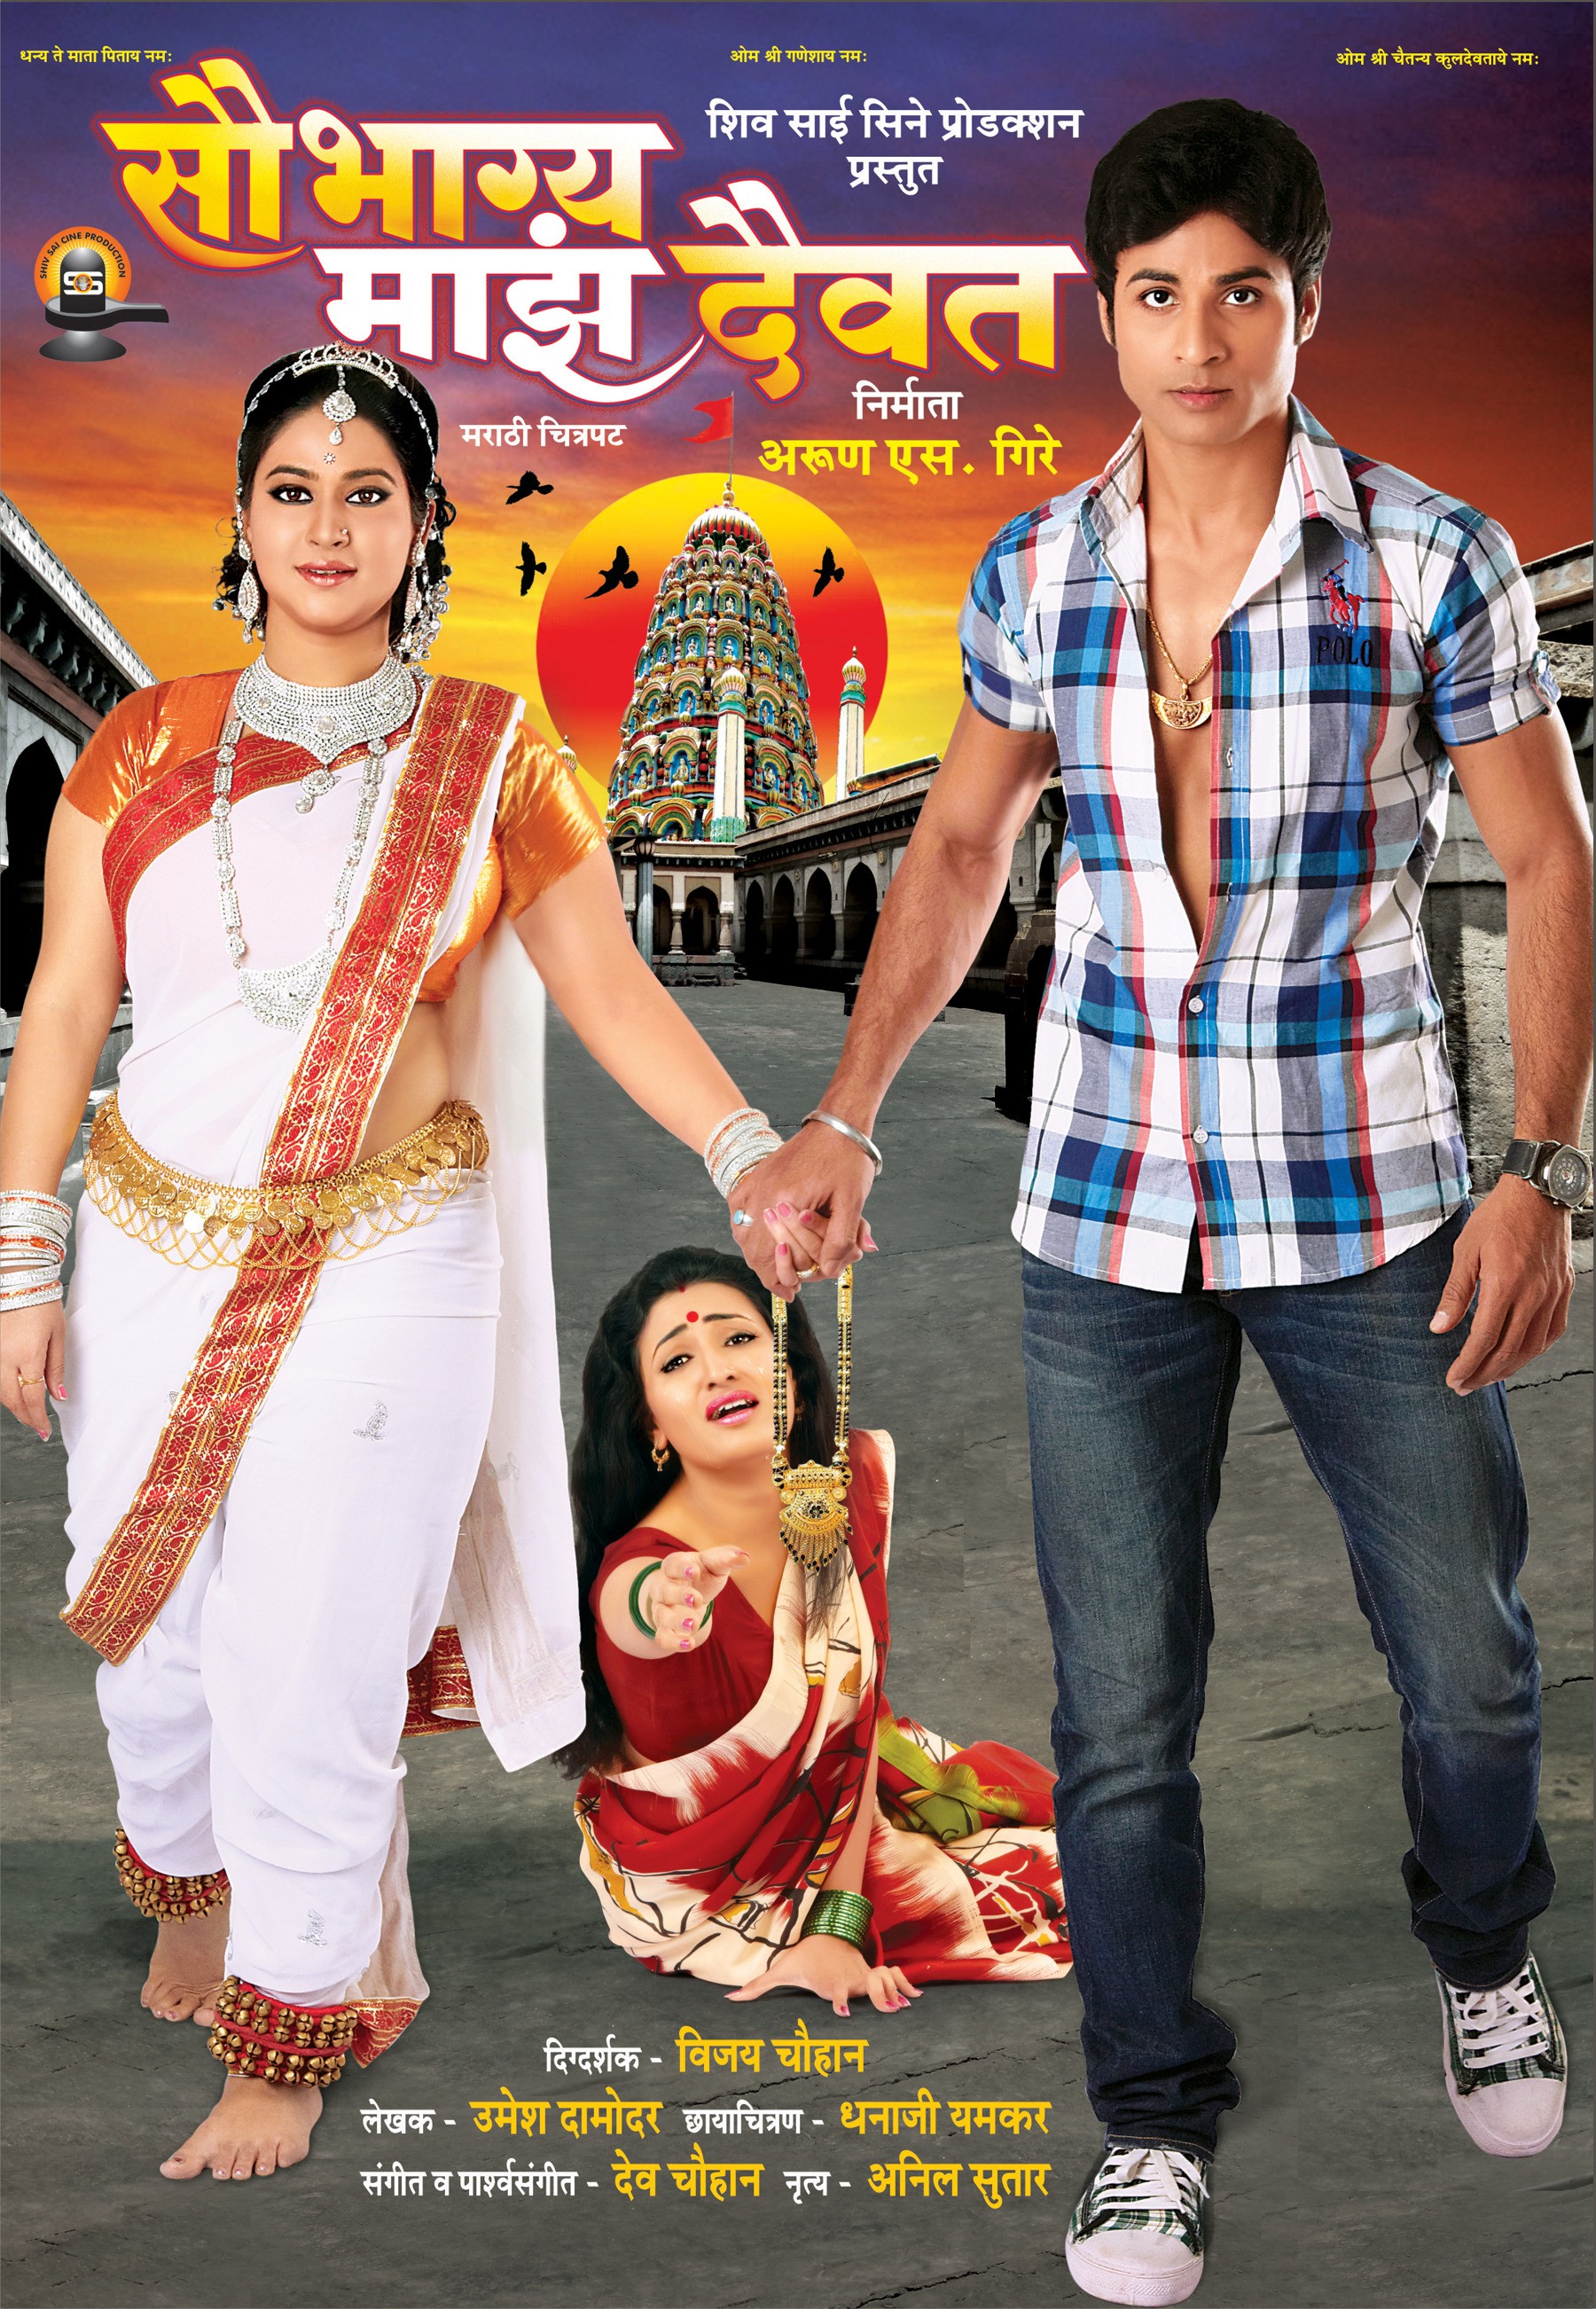 Mega Sized Movie Poster Image for Saubhagya Maza Daiwat (#2 of 2)